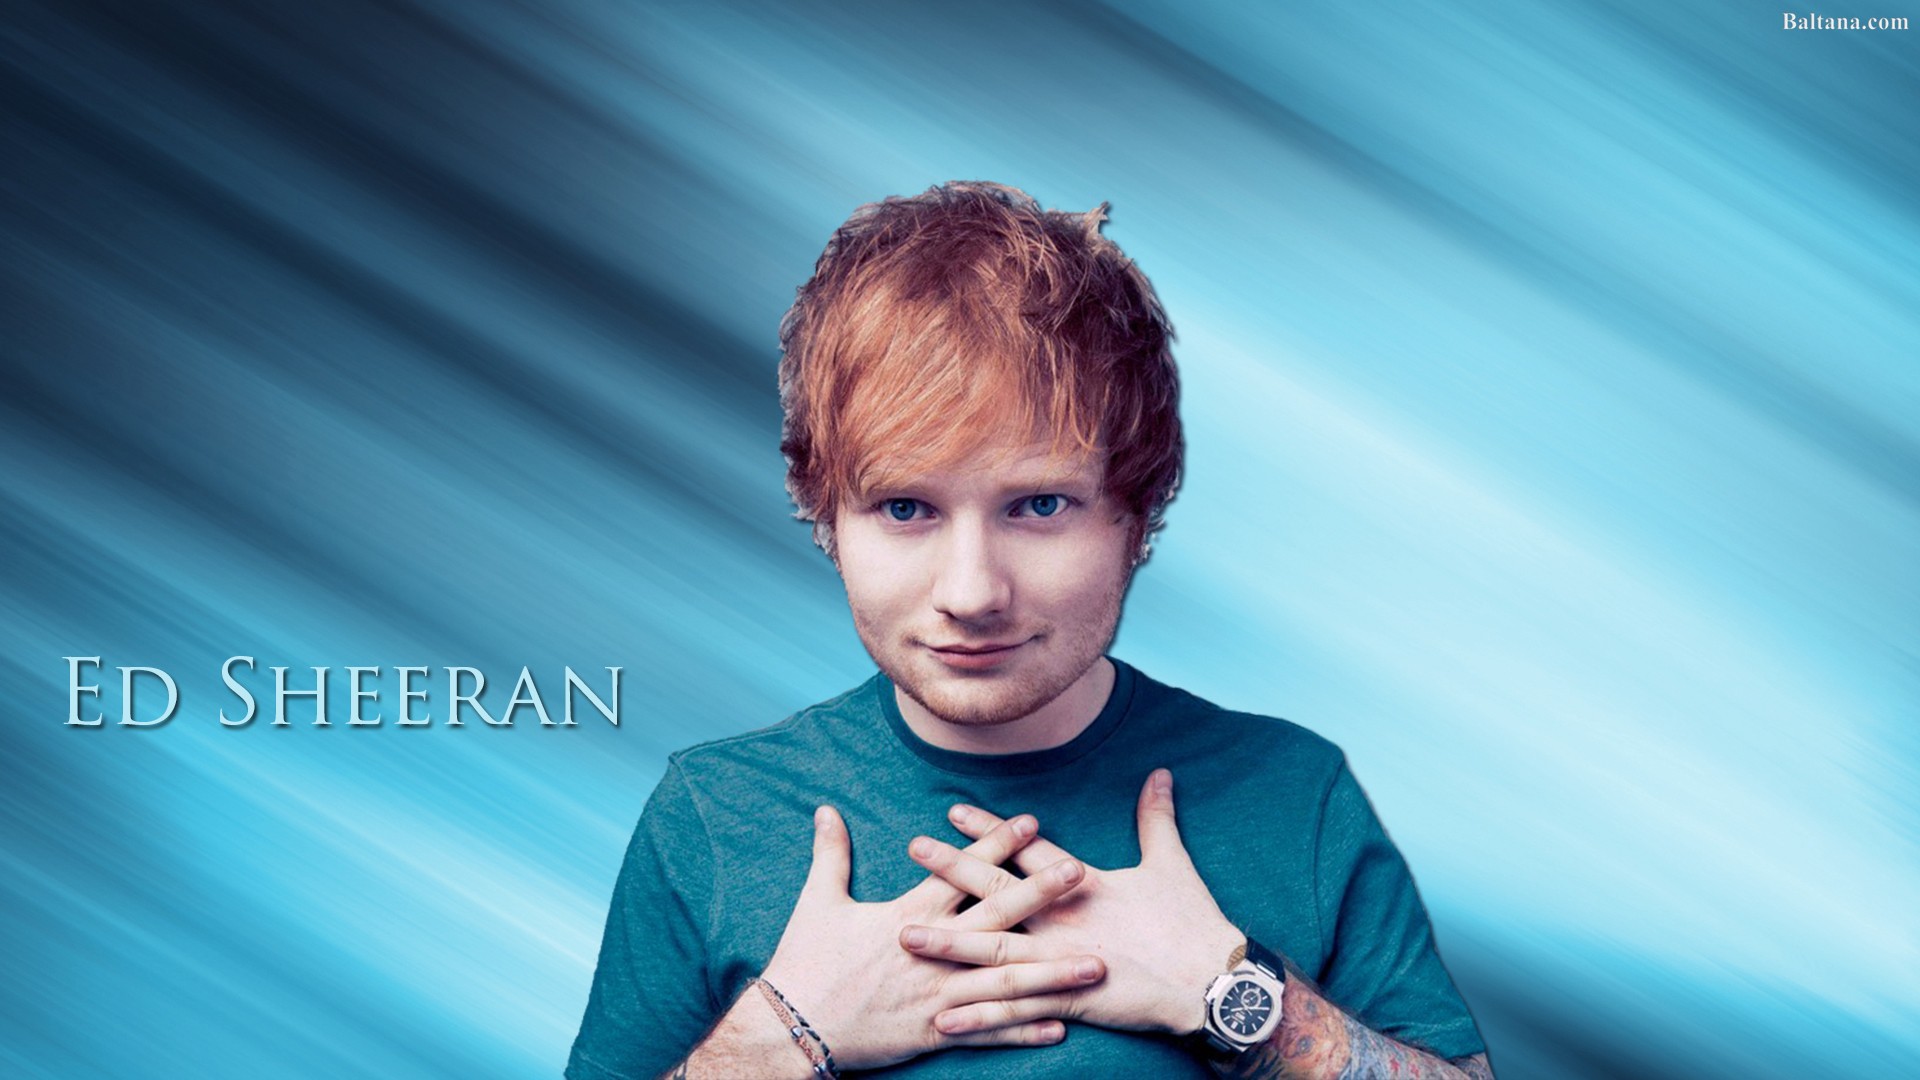 Ed Sheeran HD Wallpaper.